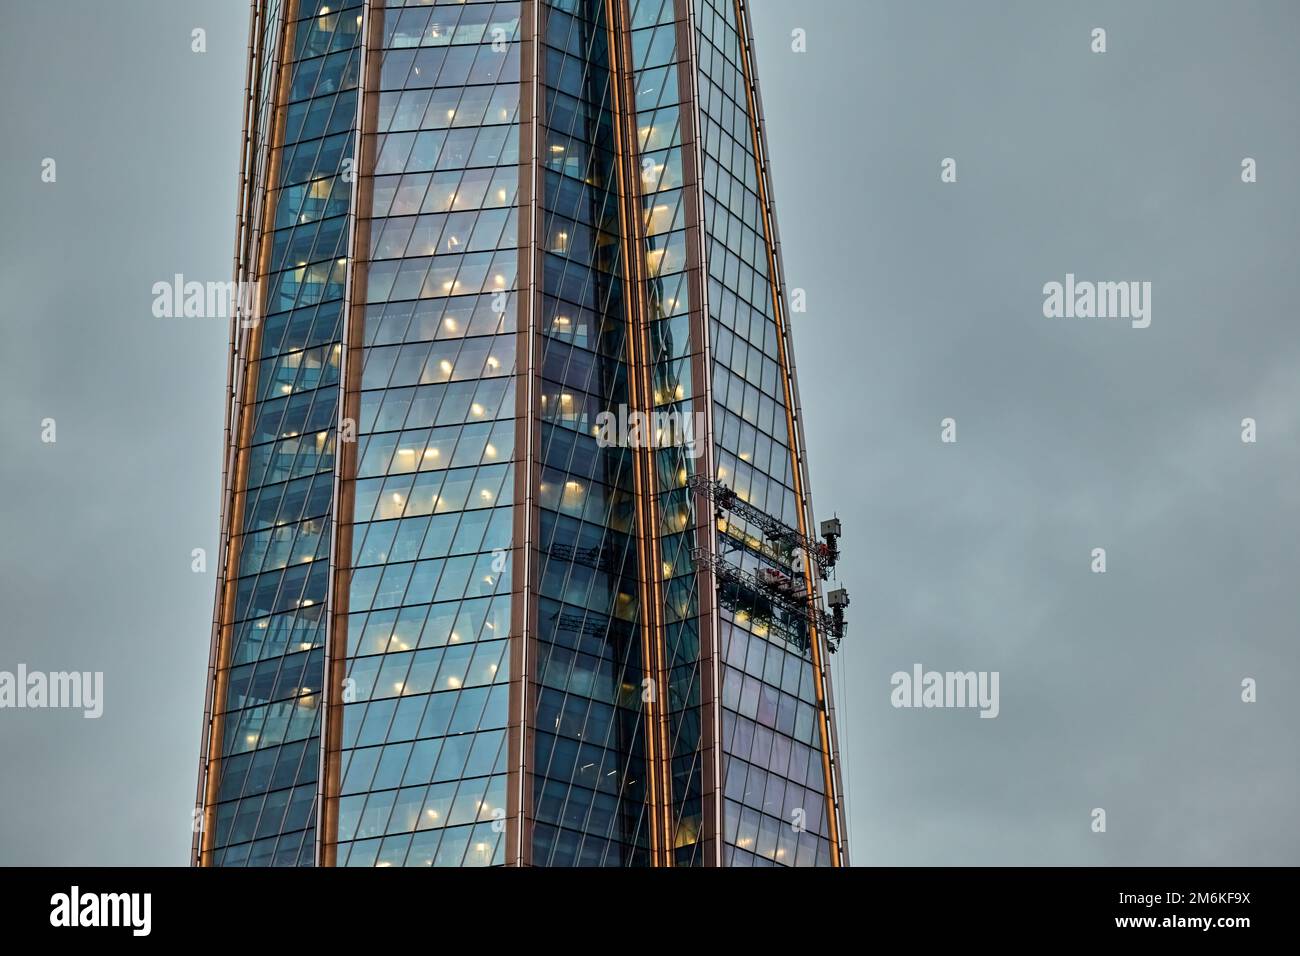 Système automatique innovant pour laver la façade en verre d'un gratte-ciel, le gratte-ciel au crépuscule, la façade en verre et en fer Banque D'Images